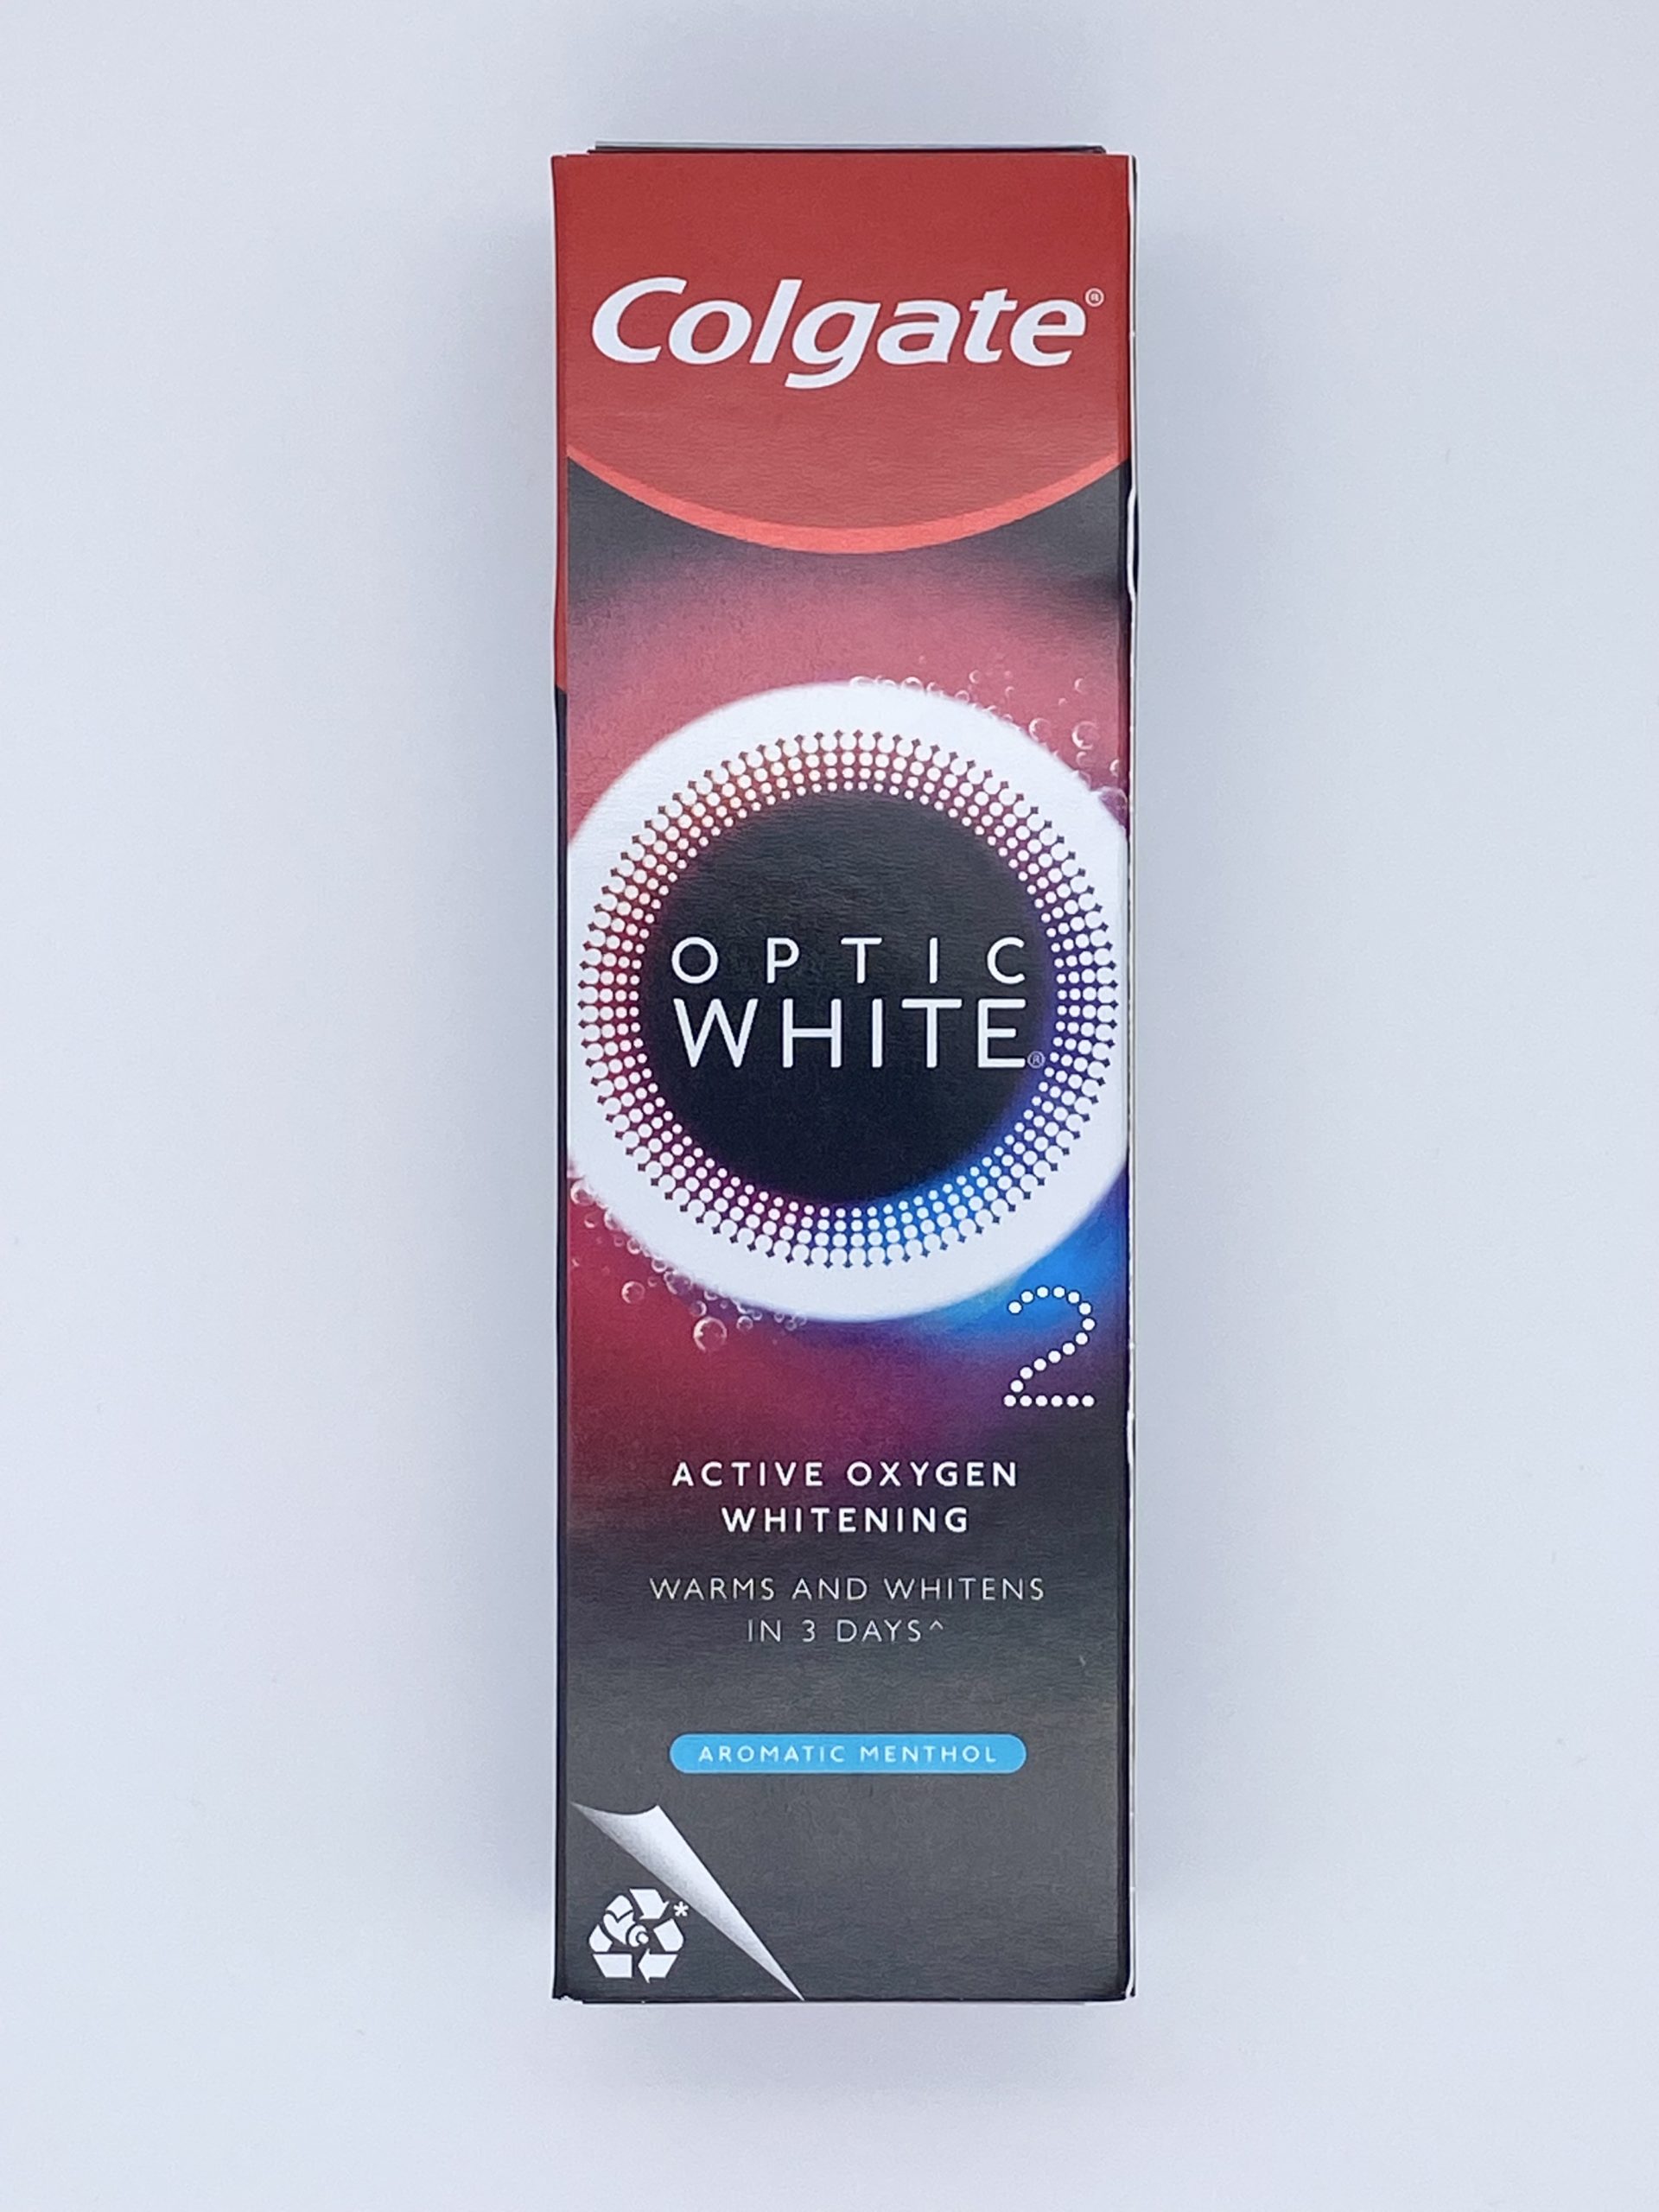 珍しい Colgate コルゲート歯磨き粉Optic white オプティックホワイト